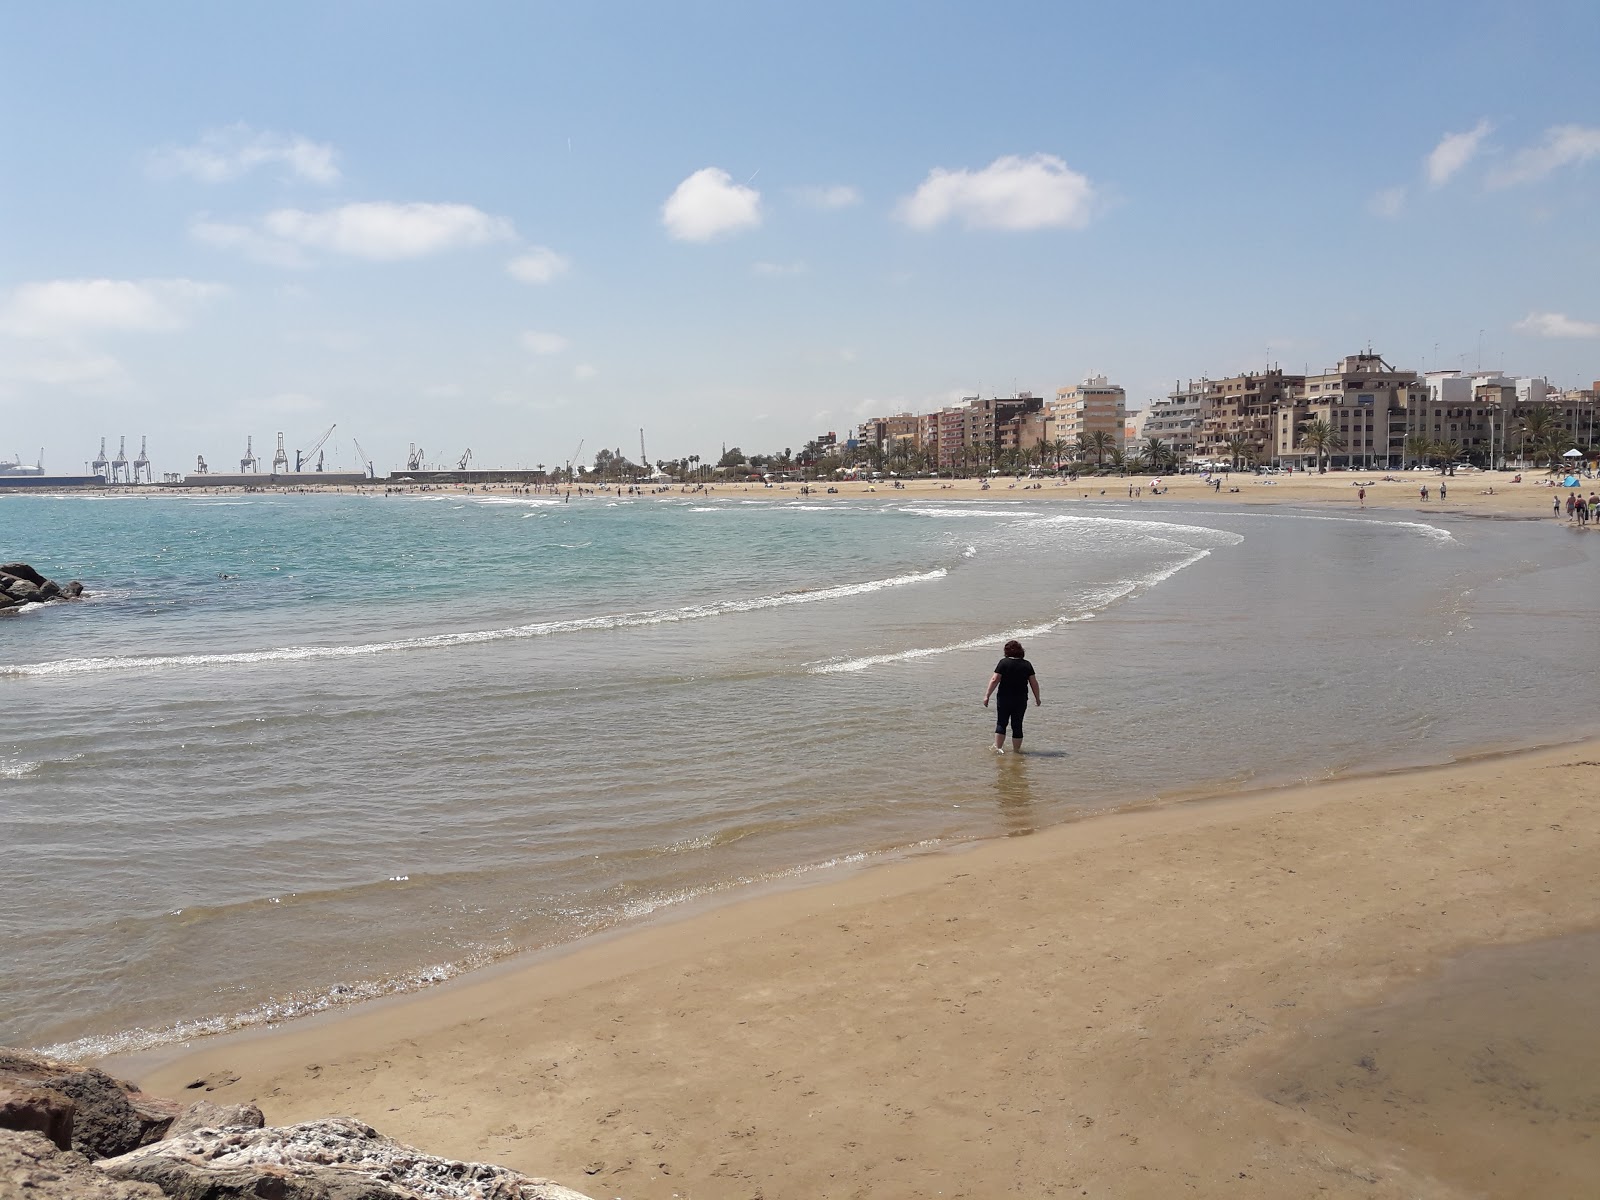 Puerto de Sagunto'in fotoğrafı i̇nce kahverengi kum yüzey ile